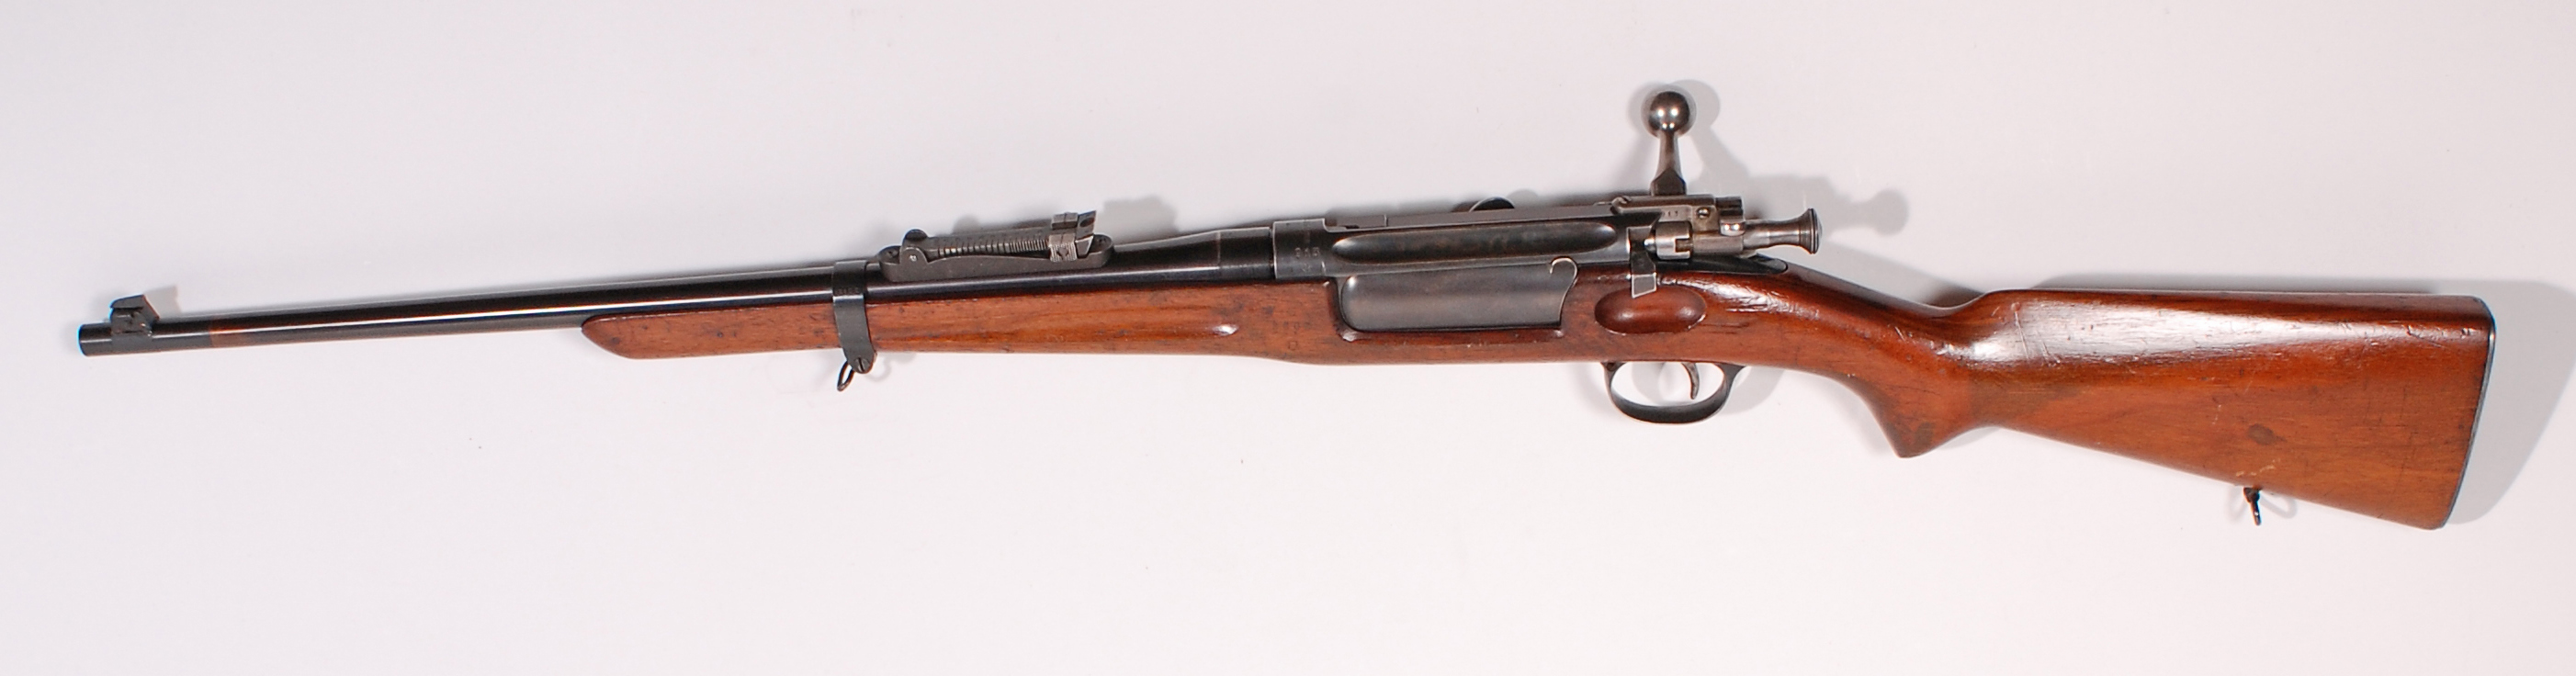 ./guns/rifle/bilder/Rifle-Kongsberg-Krag-M1906-913-2.jpg